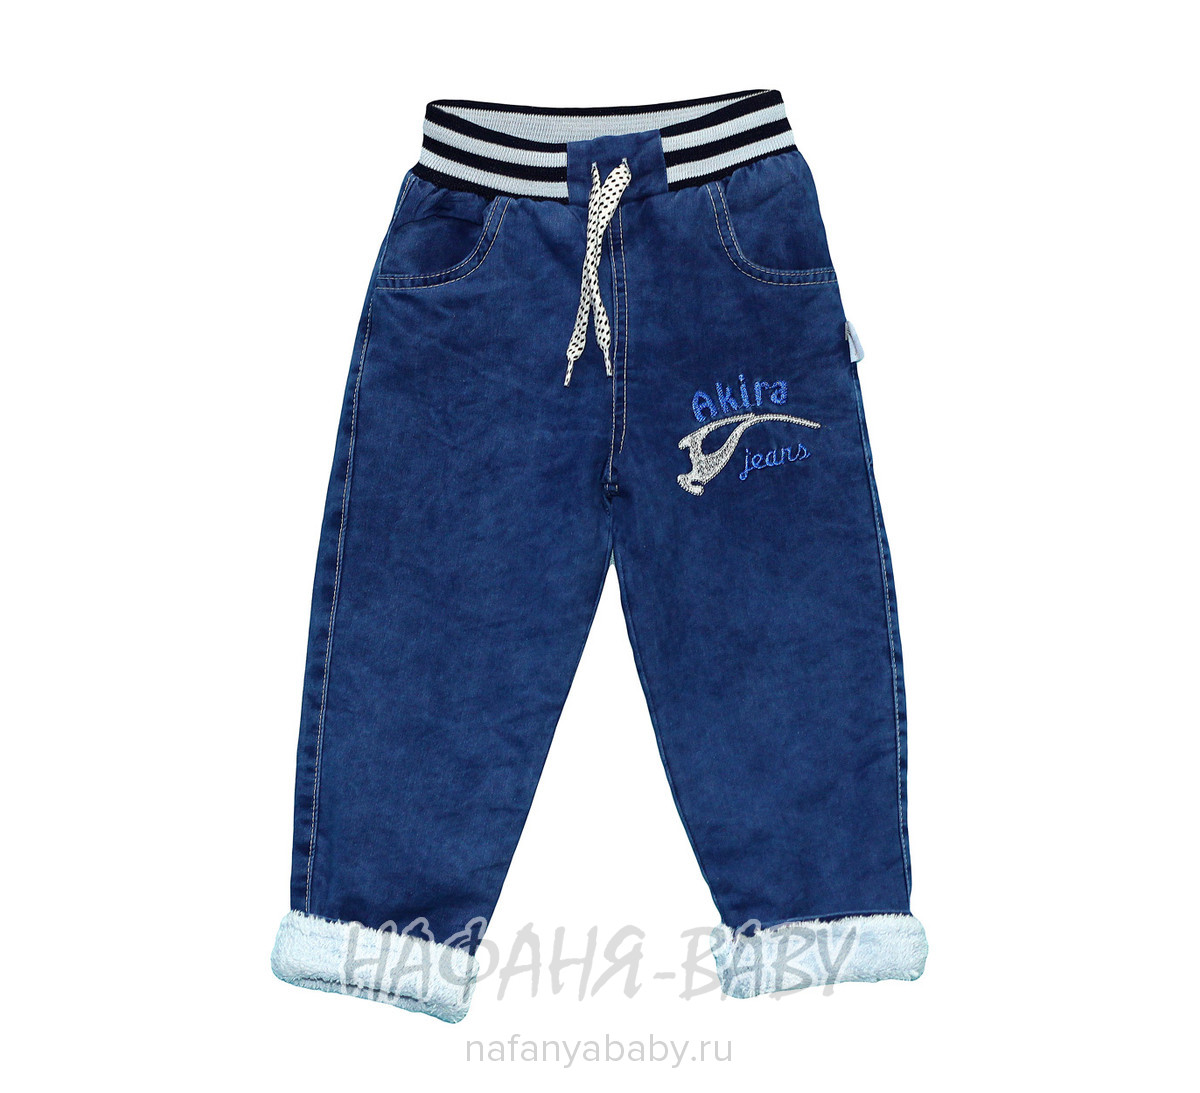 Зимние джинсы для мальчика AKIRA арт: 2551, 1-4 года, 5-9 лет, оптом Турция